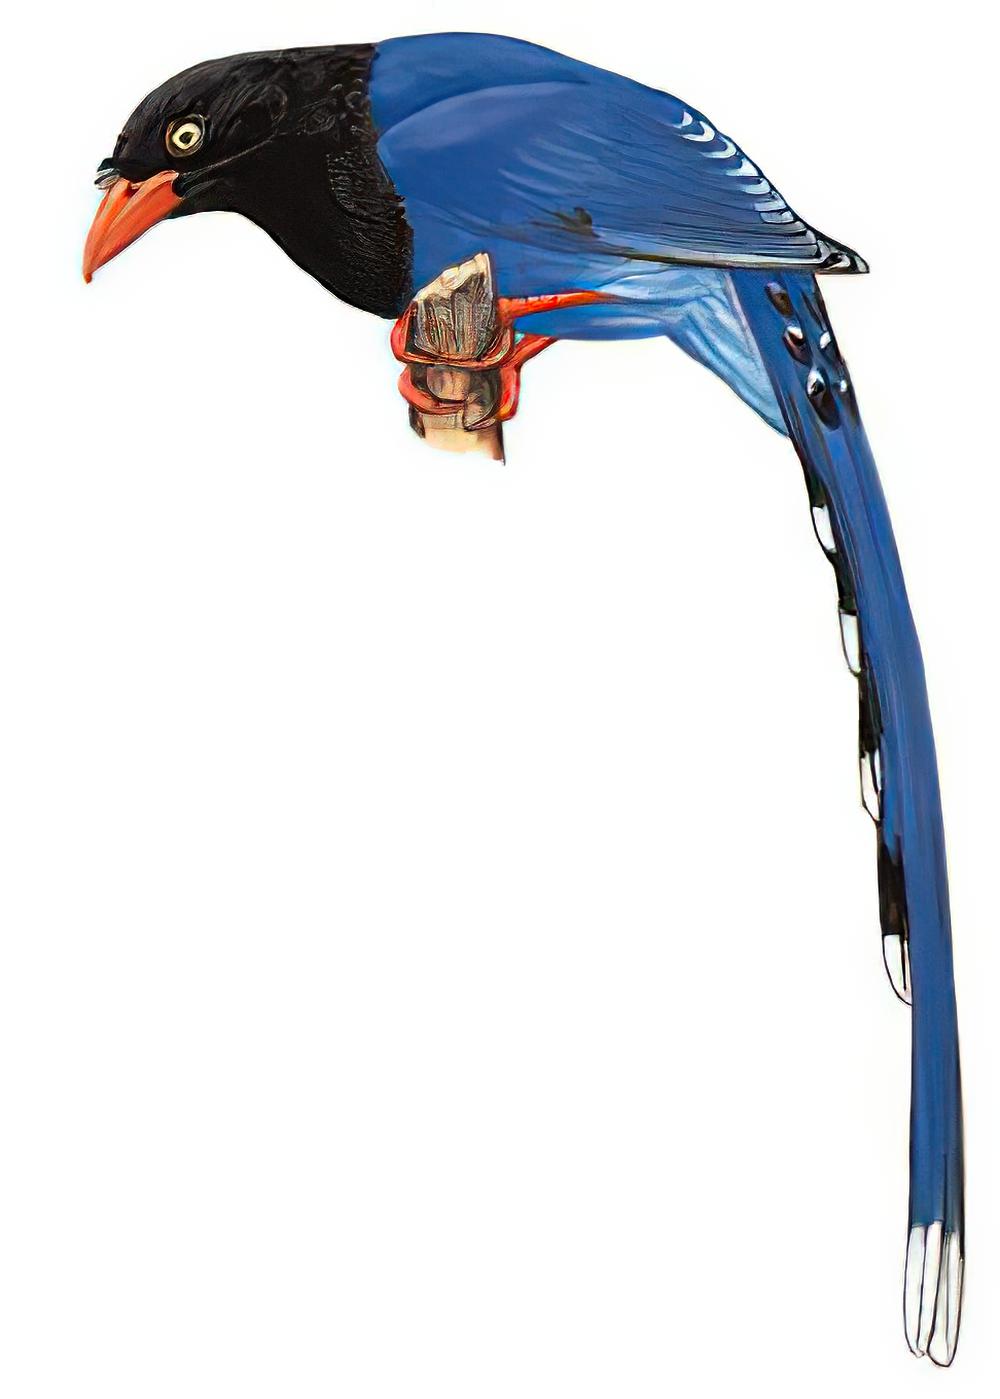 台湾蓝鹊 / Taiwan Blue Magpie / Urocissa caerulea